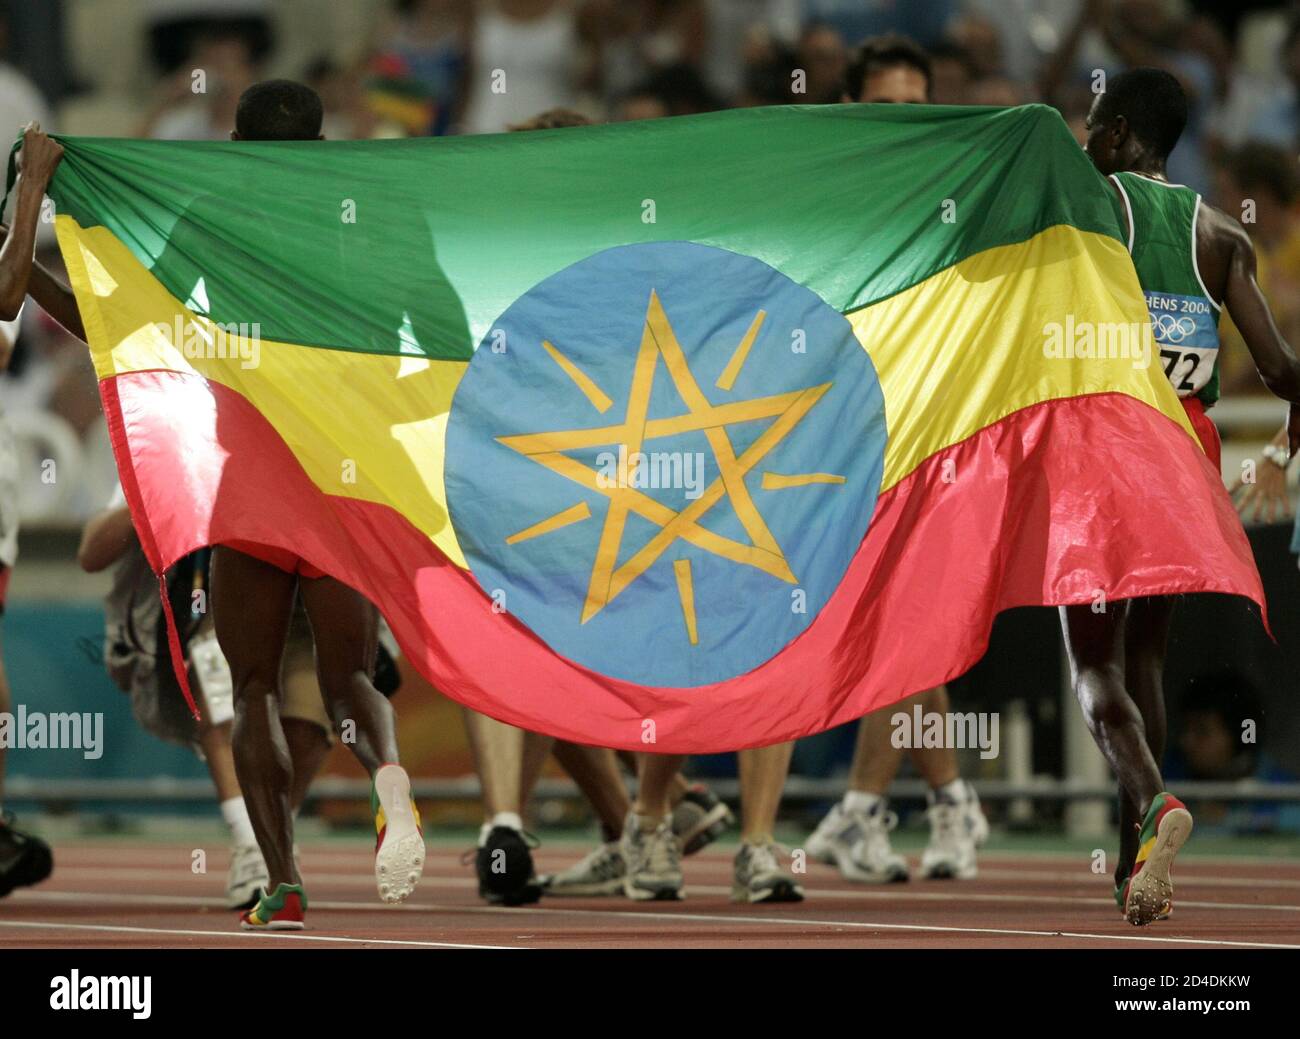 Kenya Bekele và người đồng hương Sihine là những vận động viên vô địch thế giới và gương mặt đại diện cho thể thao Ethiopia. Hãy cùng tận hưởng bức ảnh liên quan và truyền cảm hứng từ tinh thần kiên trì và đấu tranh của họ.